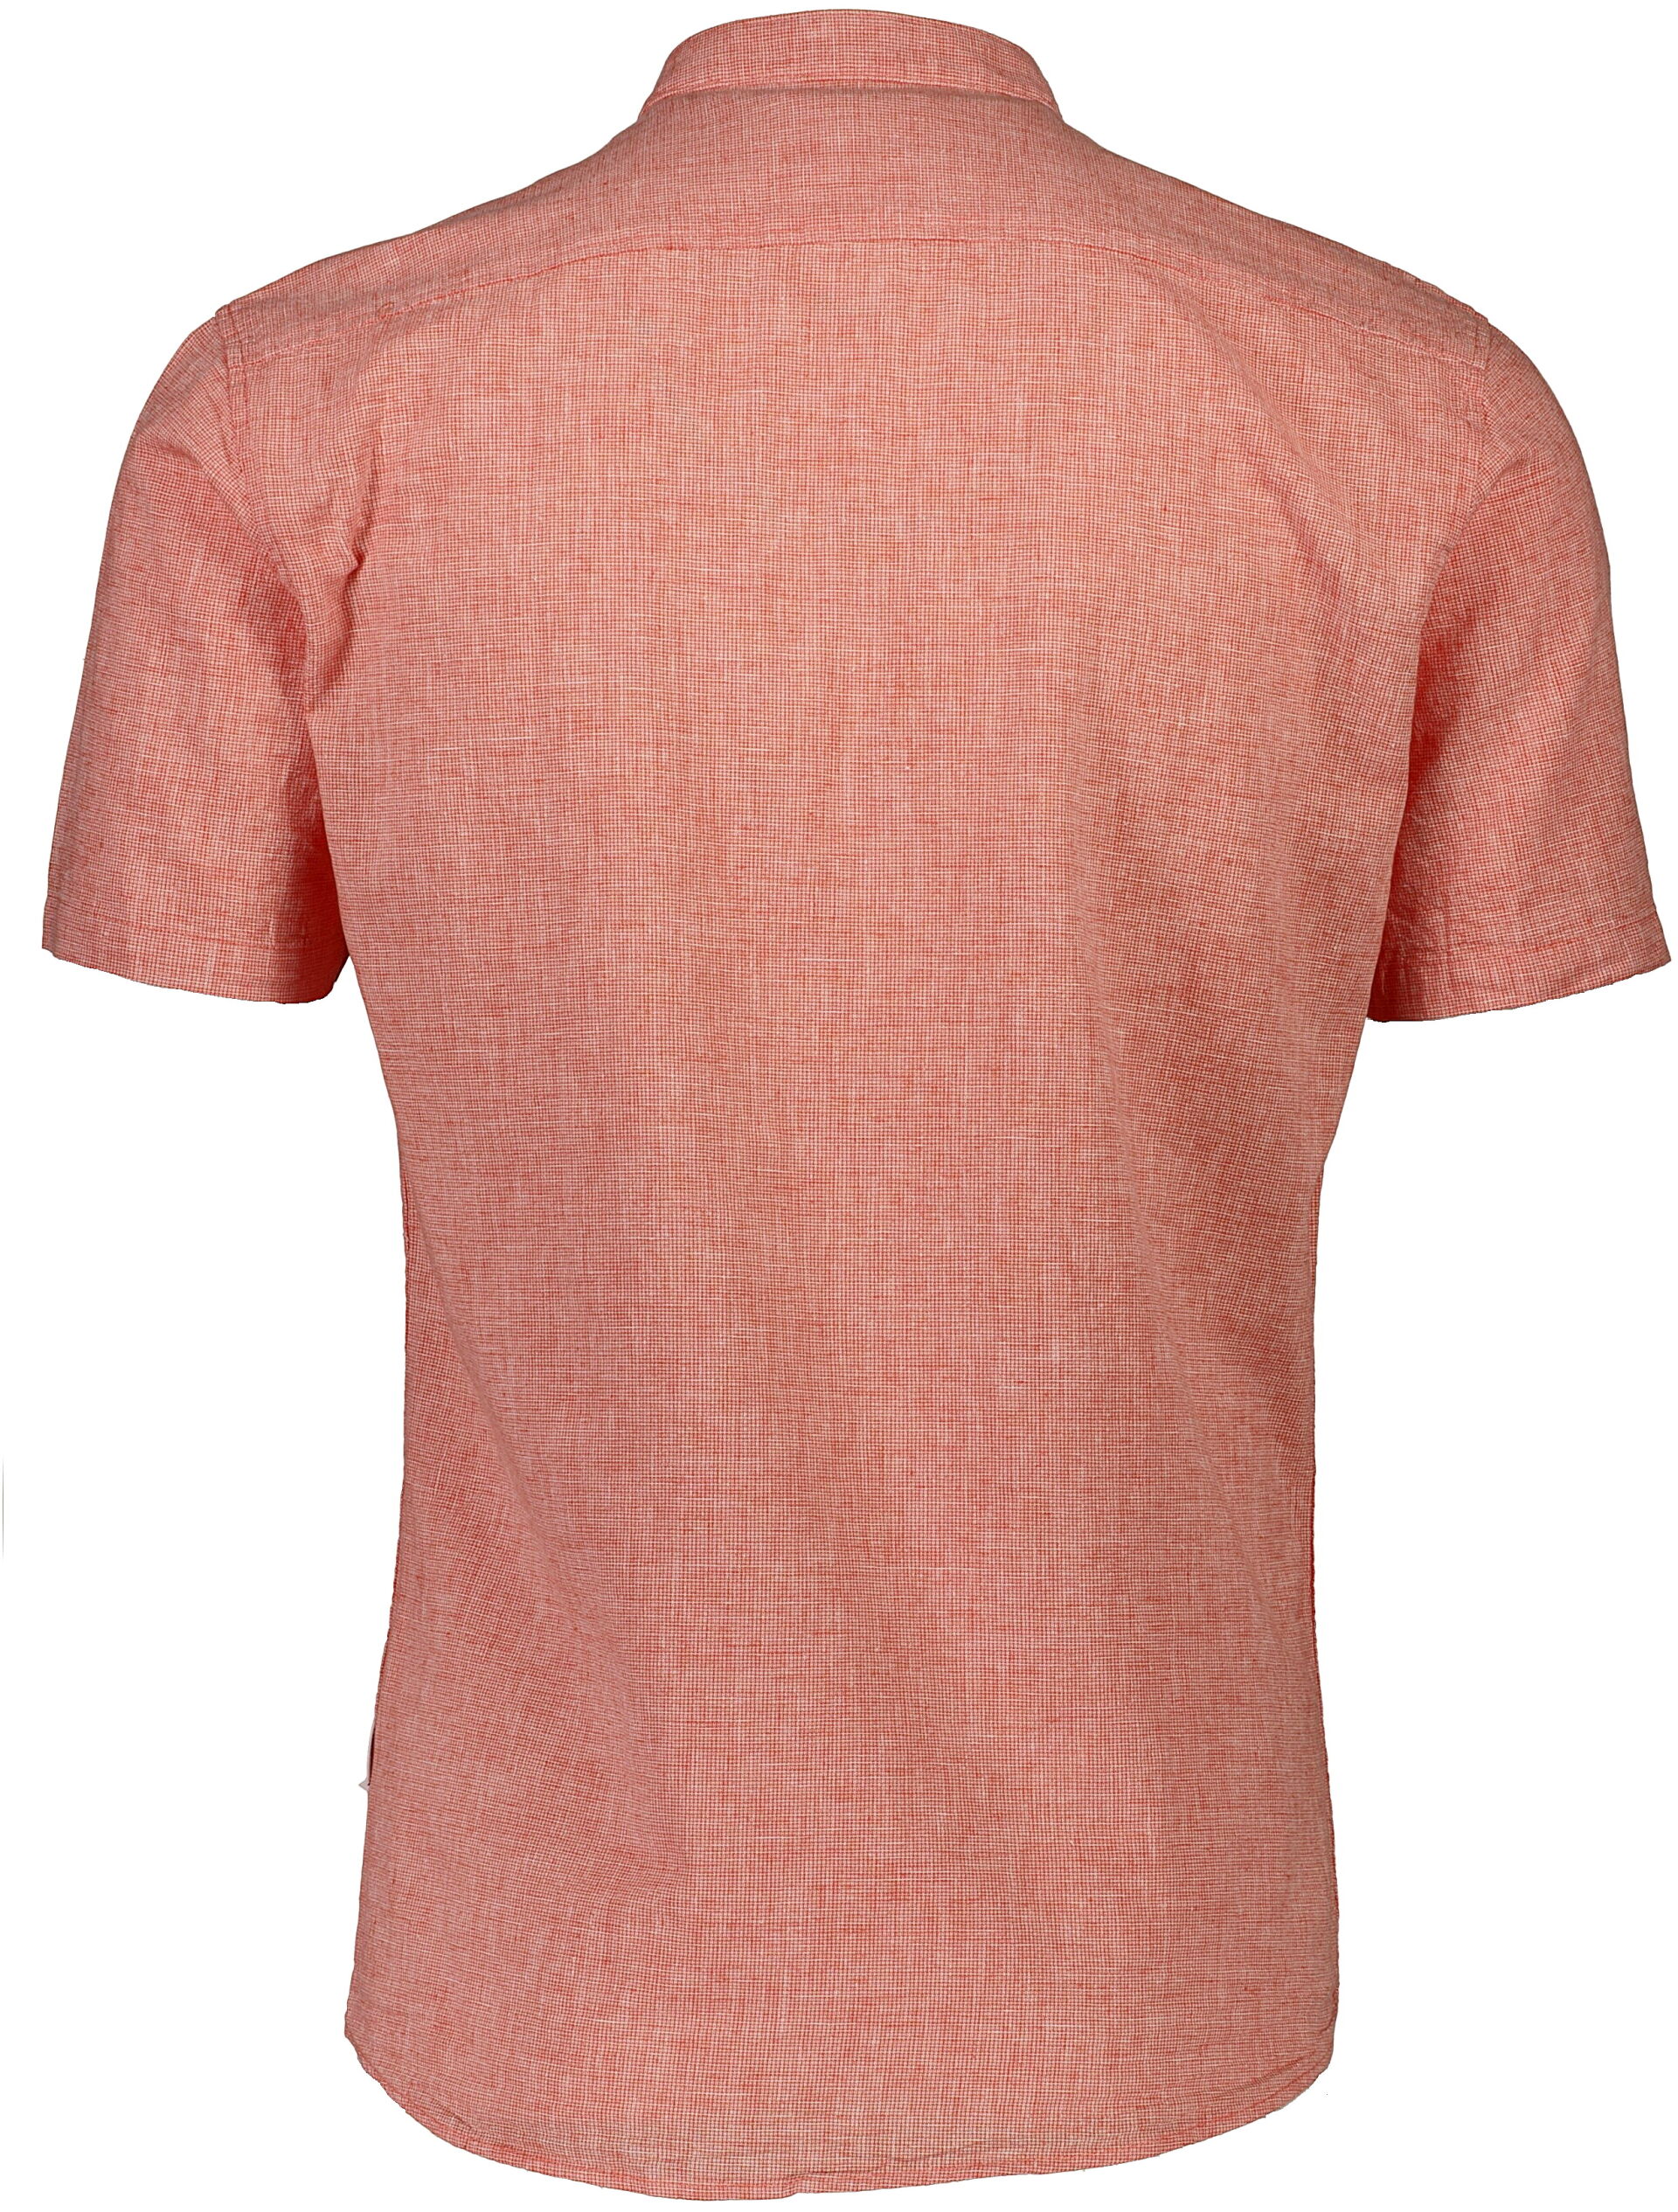 Linen shirt 30-203189A